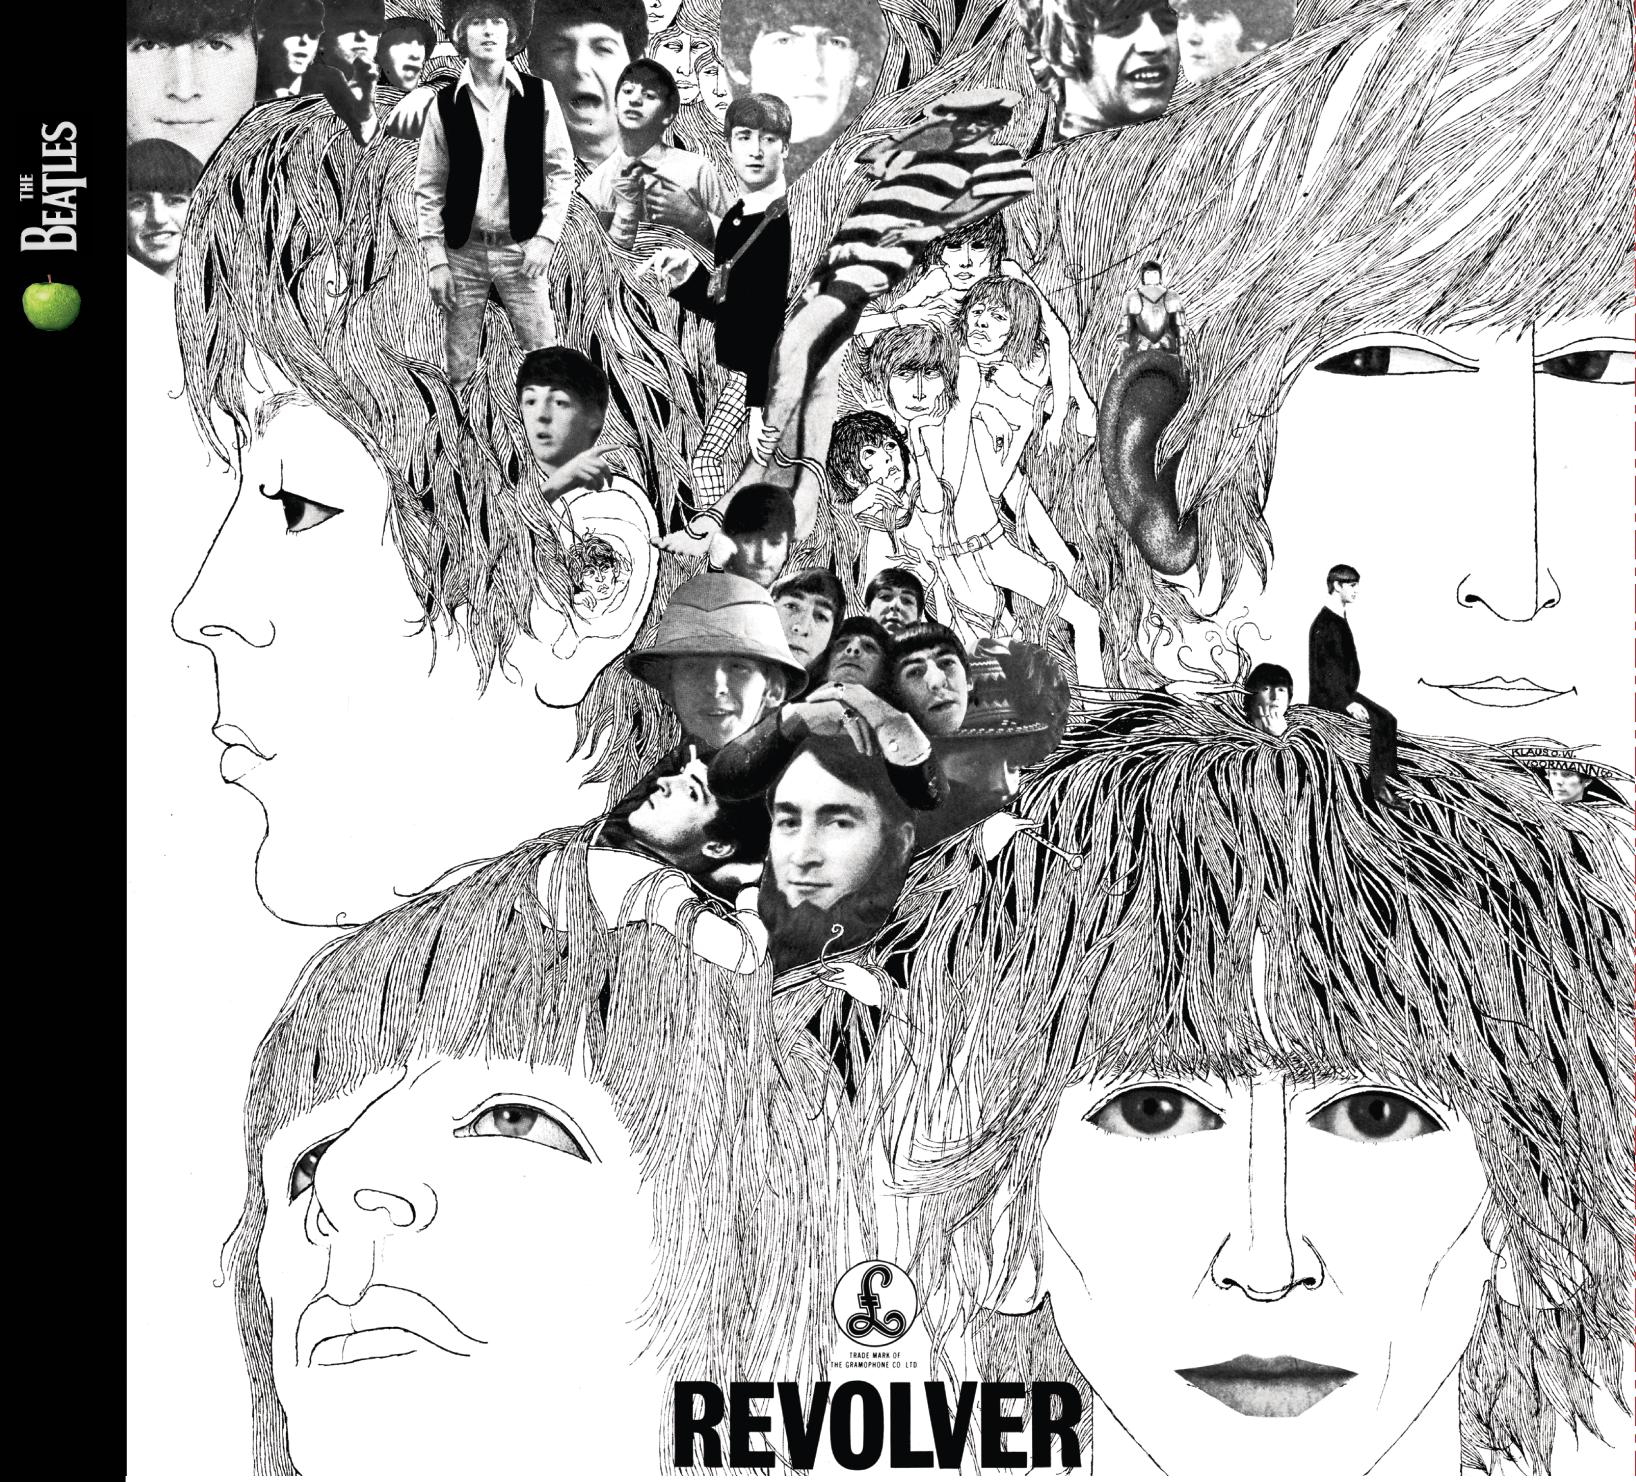 Happy 50th Birthday to Revolver